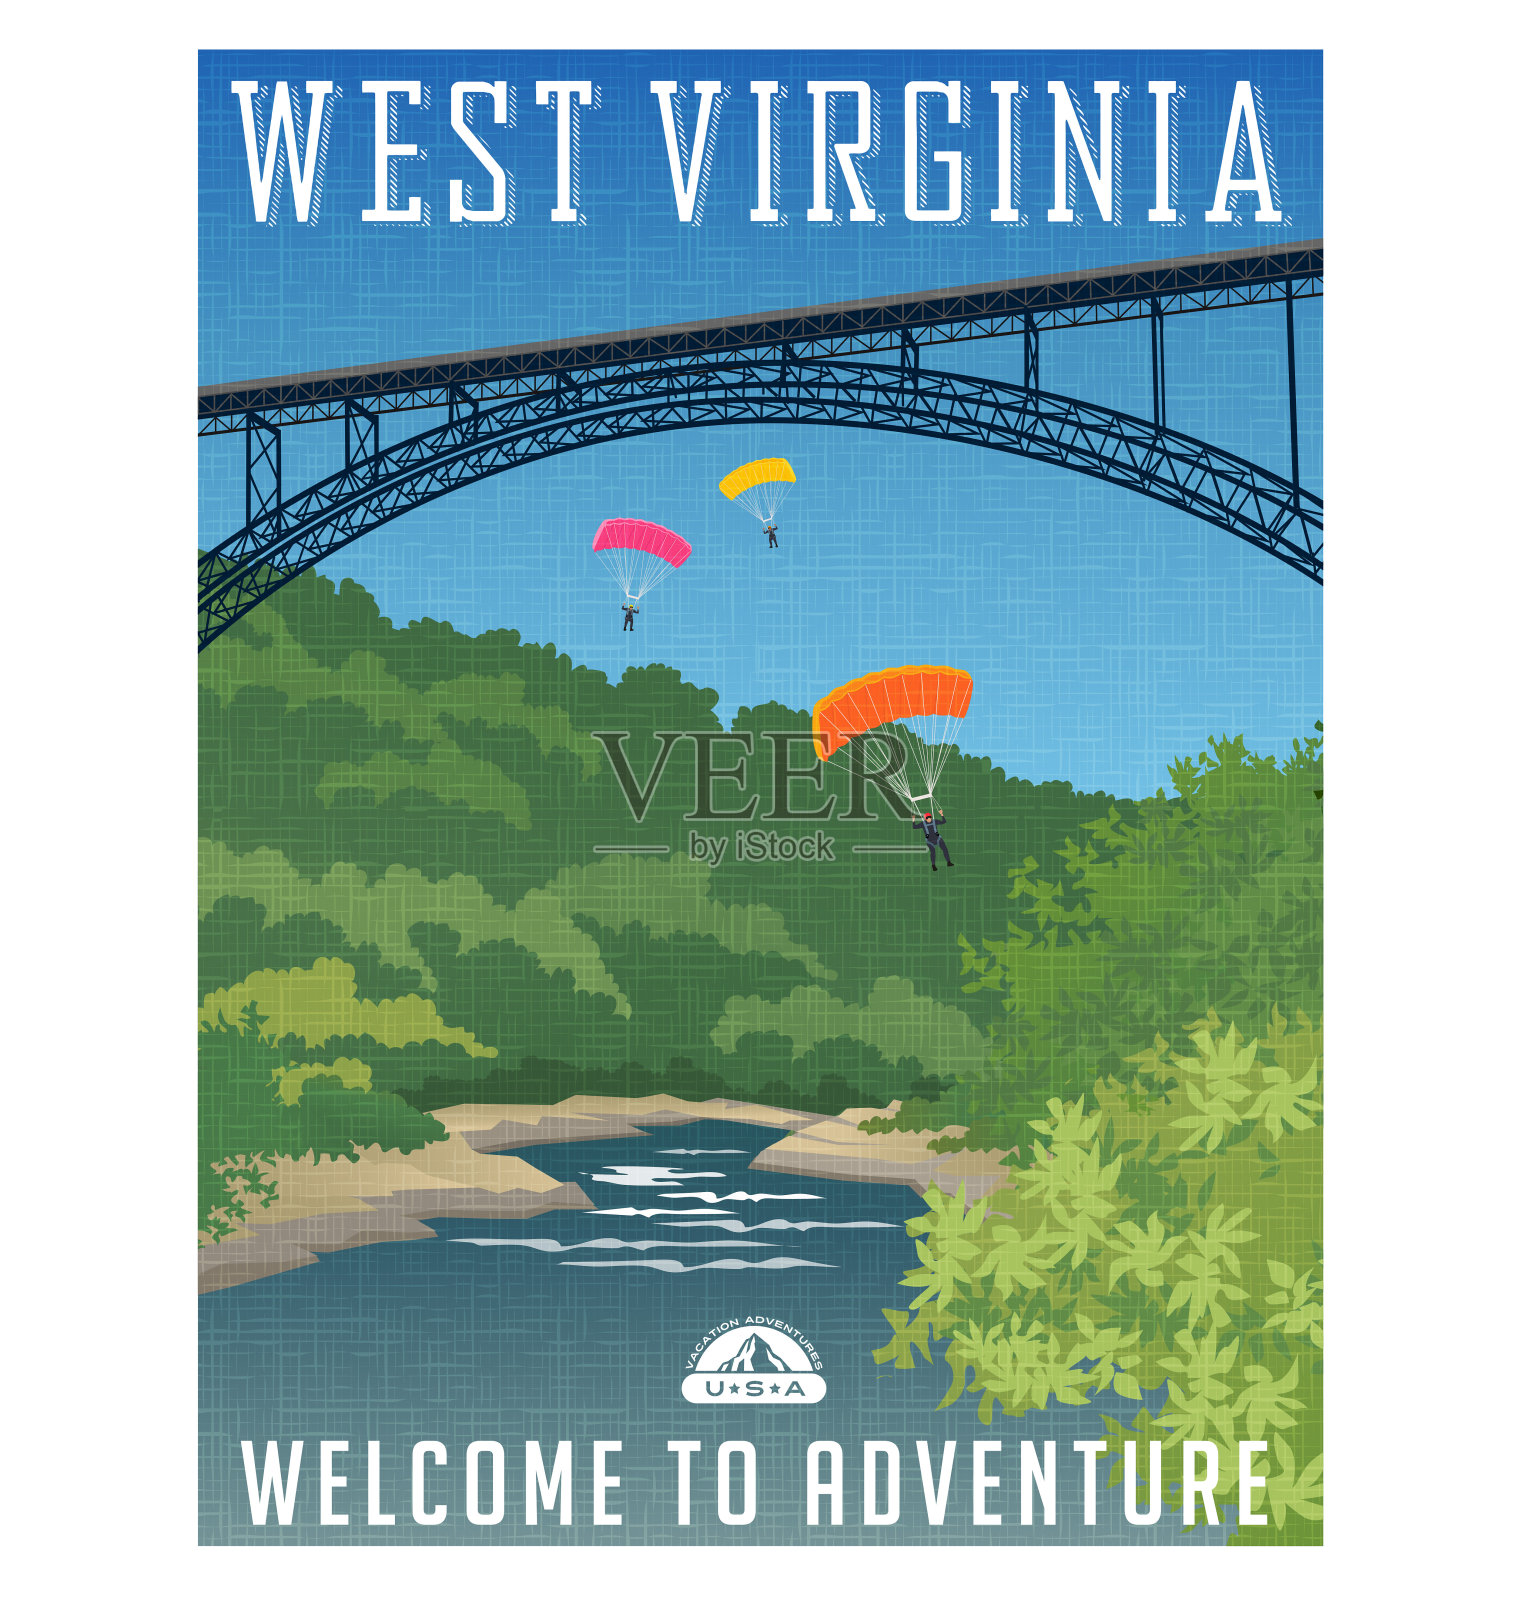 复古风格的旅行海报或贴纸。美国，西弗吉尼亚州设计模板素材